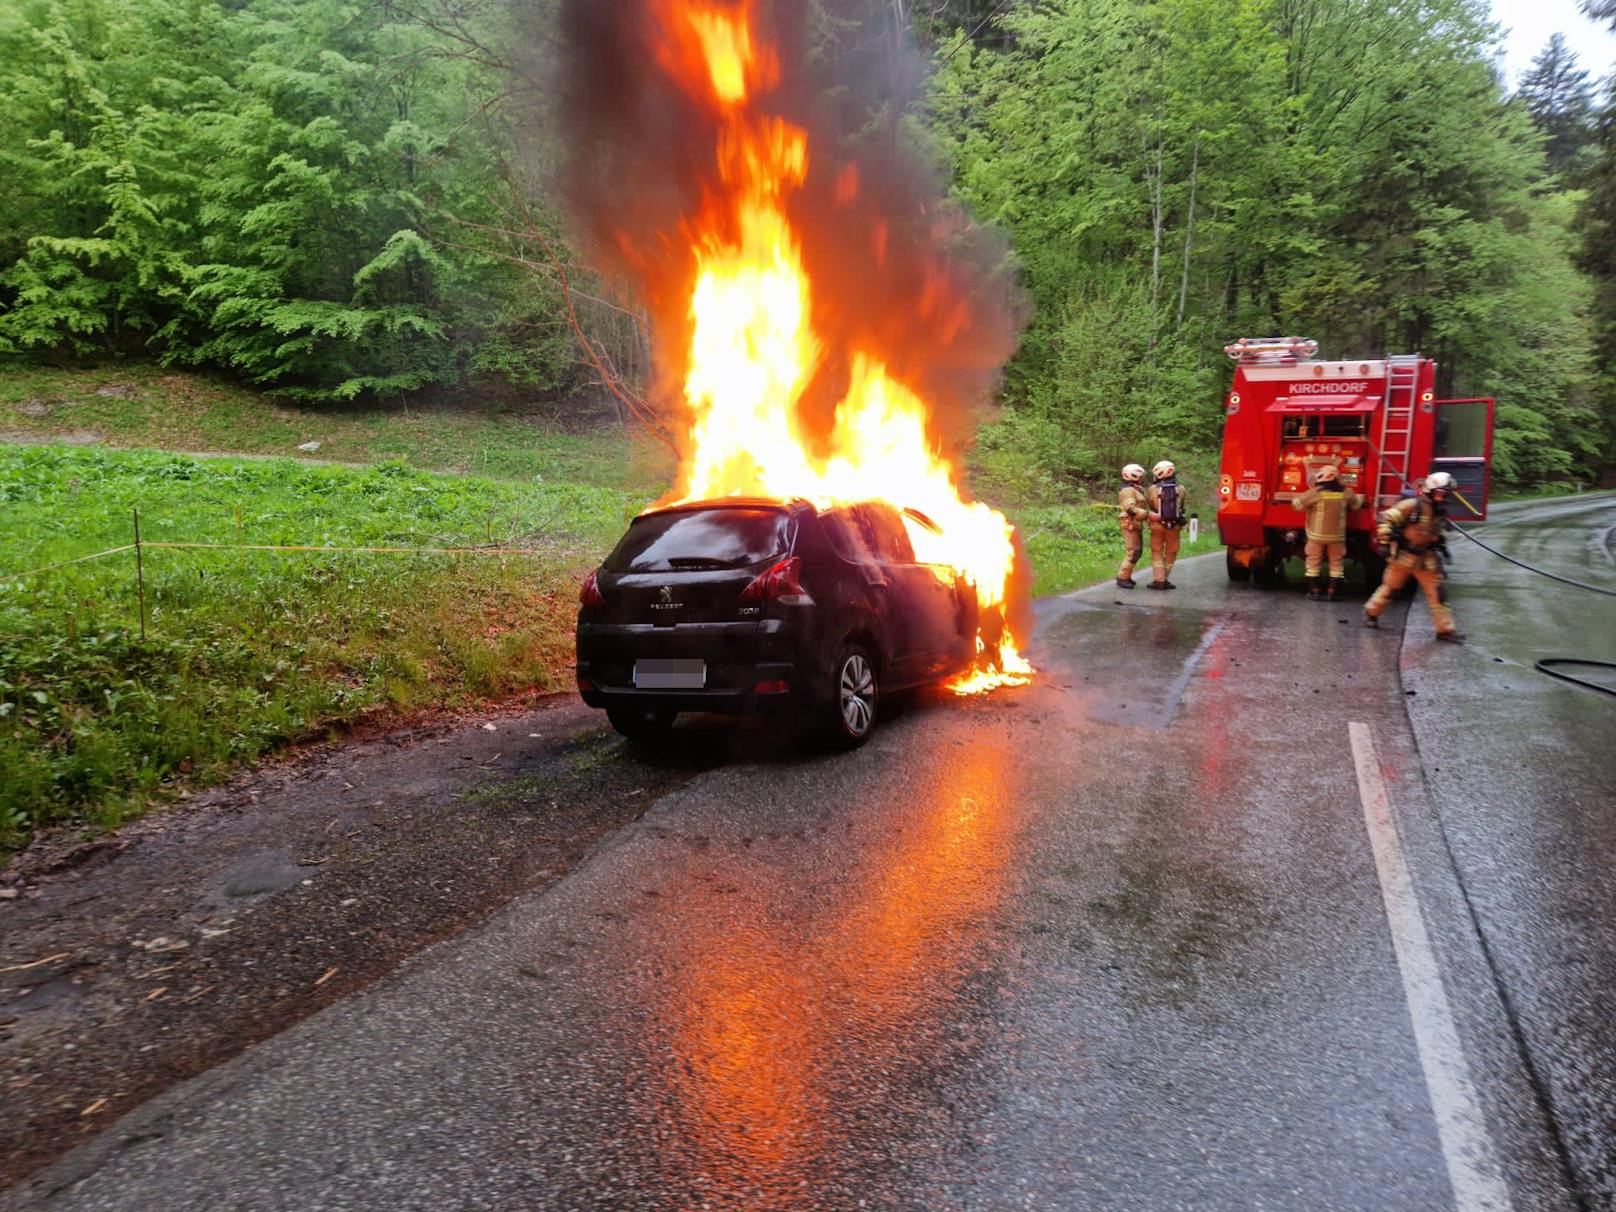 Auto geht während der Fahrt plötzlich in Flammen auf